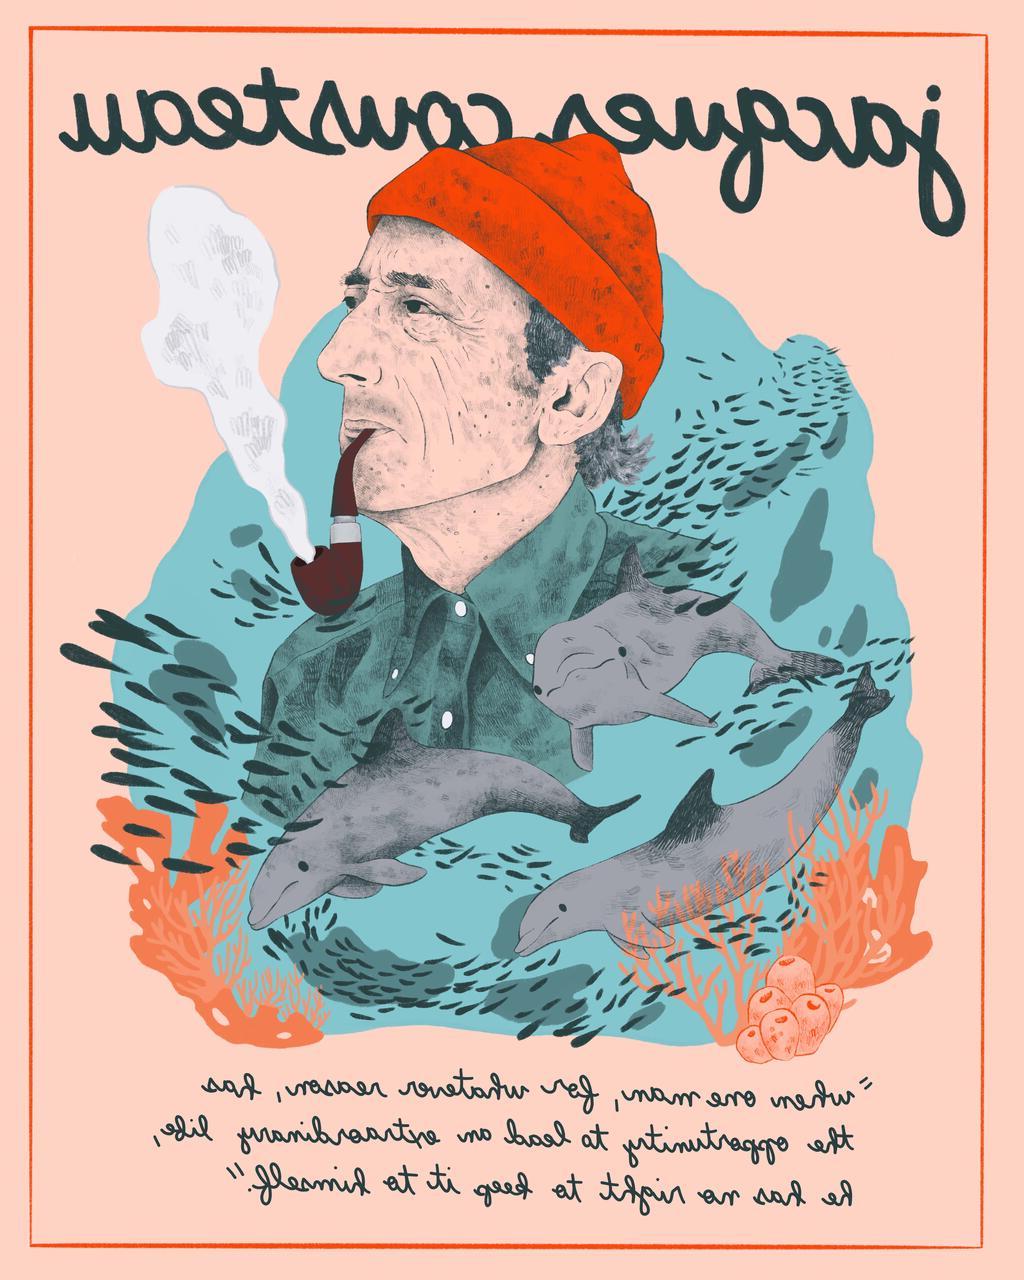 卡姆·麦克莱恩绘制的雅克·库斯托插画海报